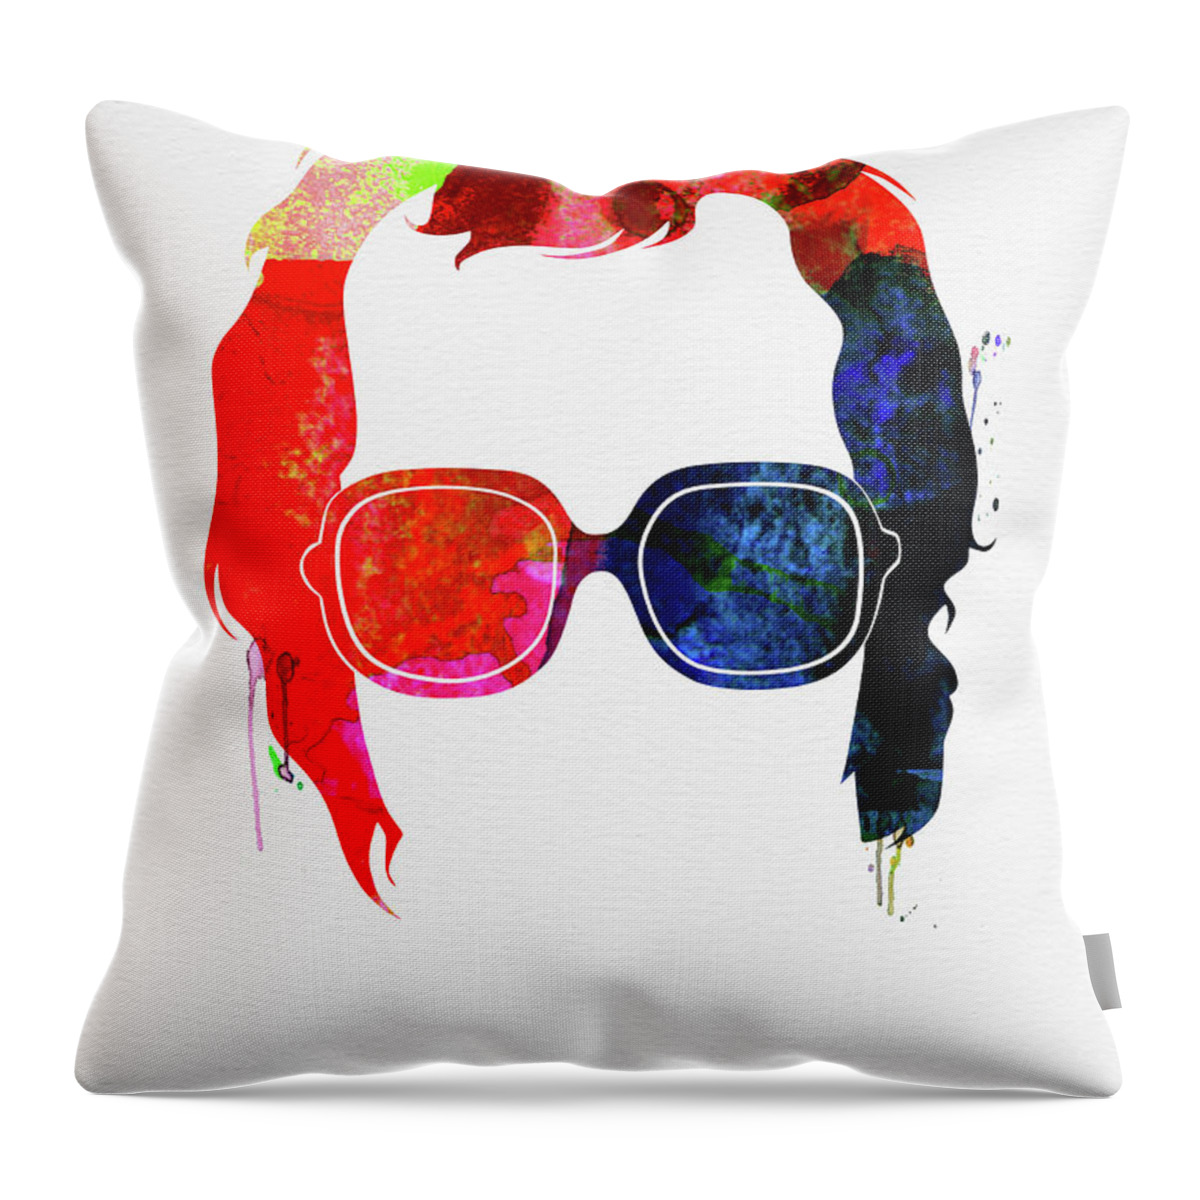 Elton John Throw Pillow featuring the mixed media Elton Watercolor by Naxart Studio